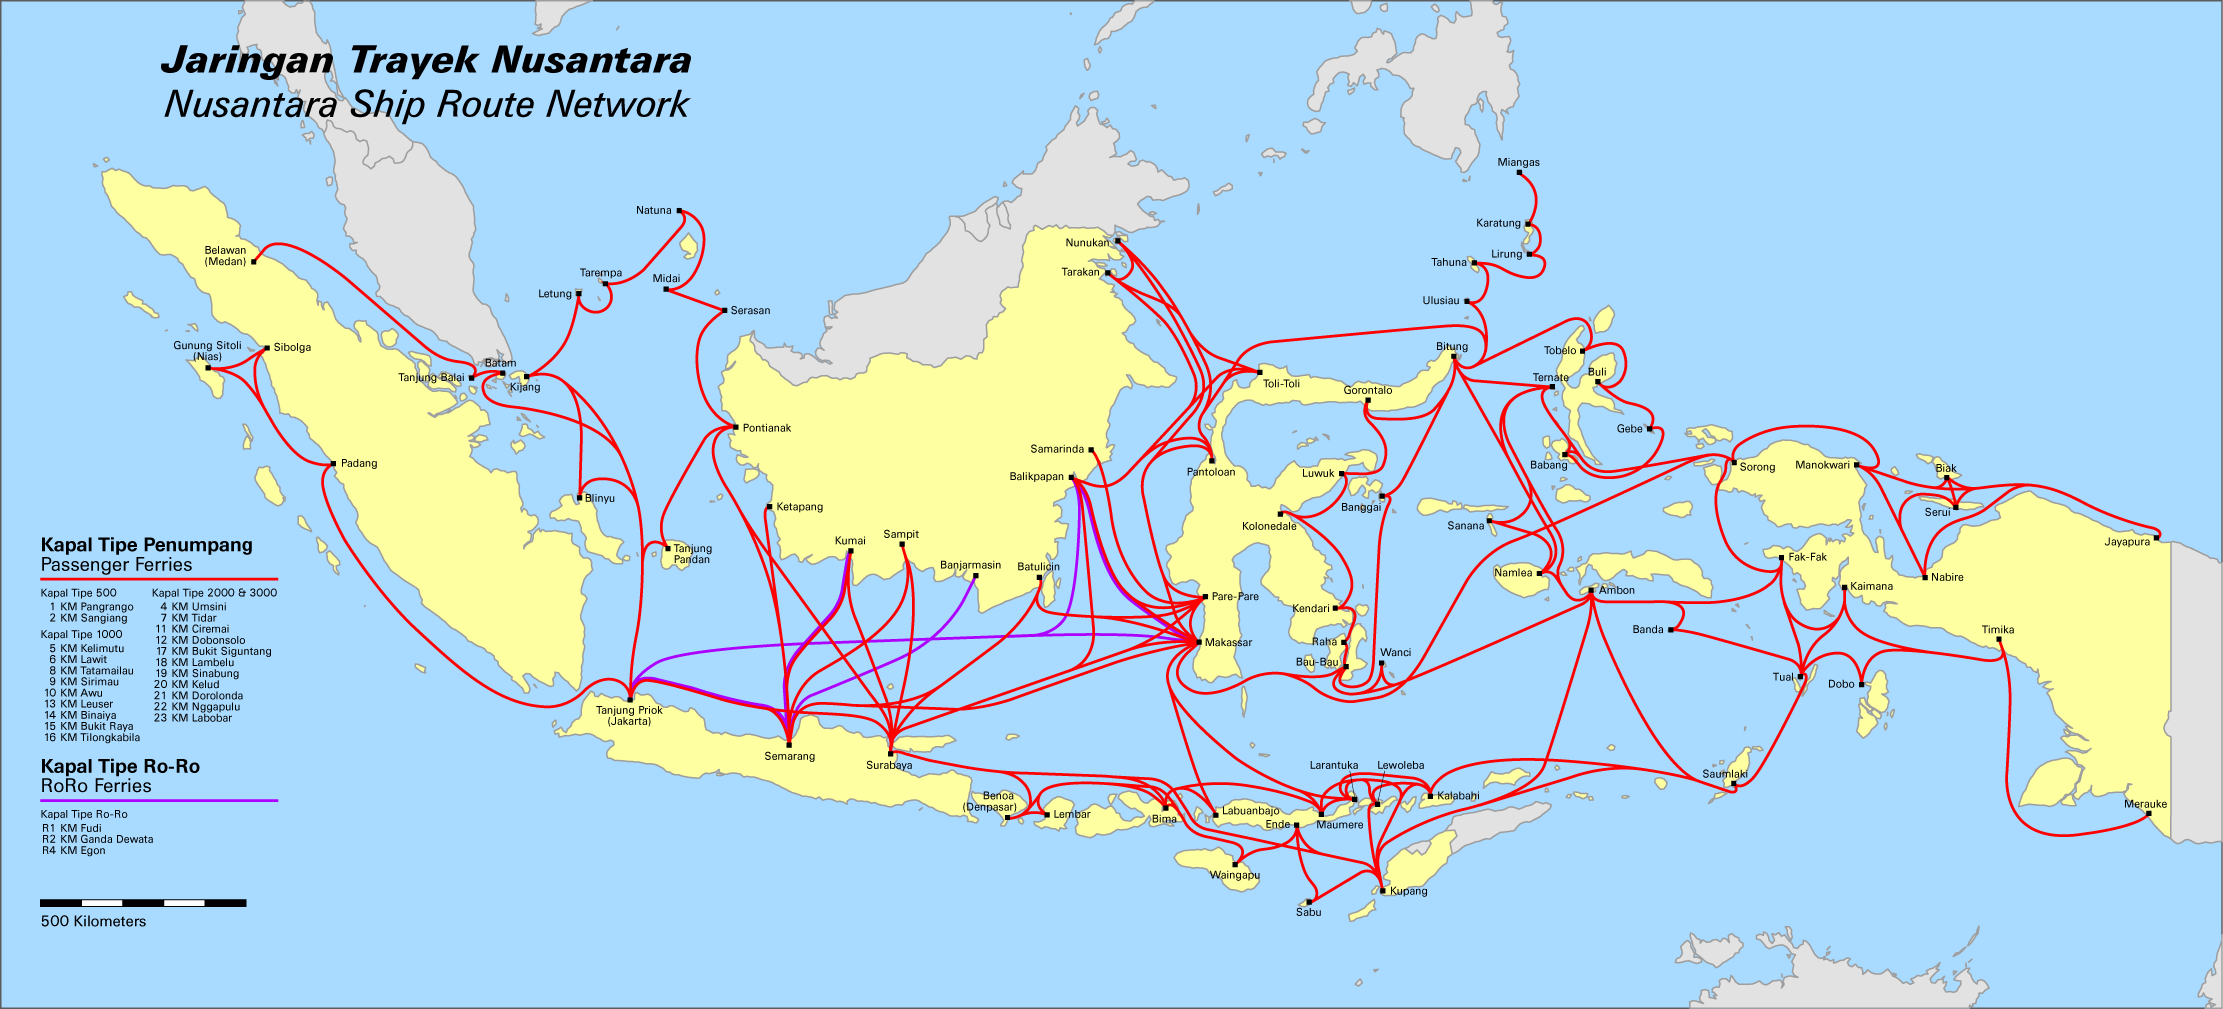 Карта Индонезии на русском языке — Туристер.Ру